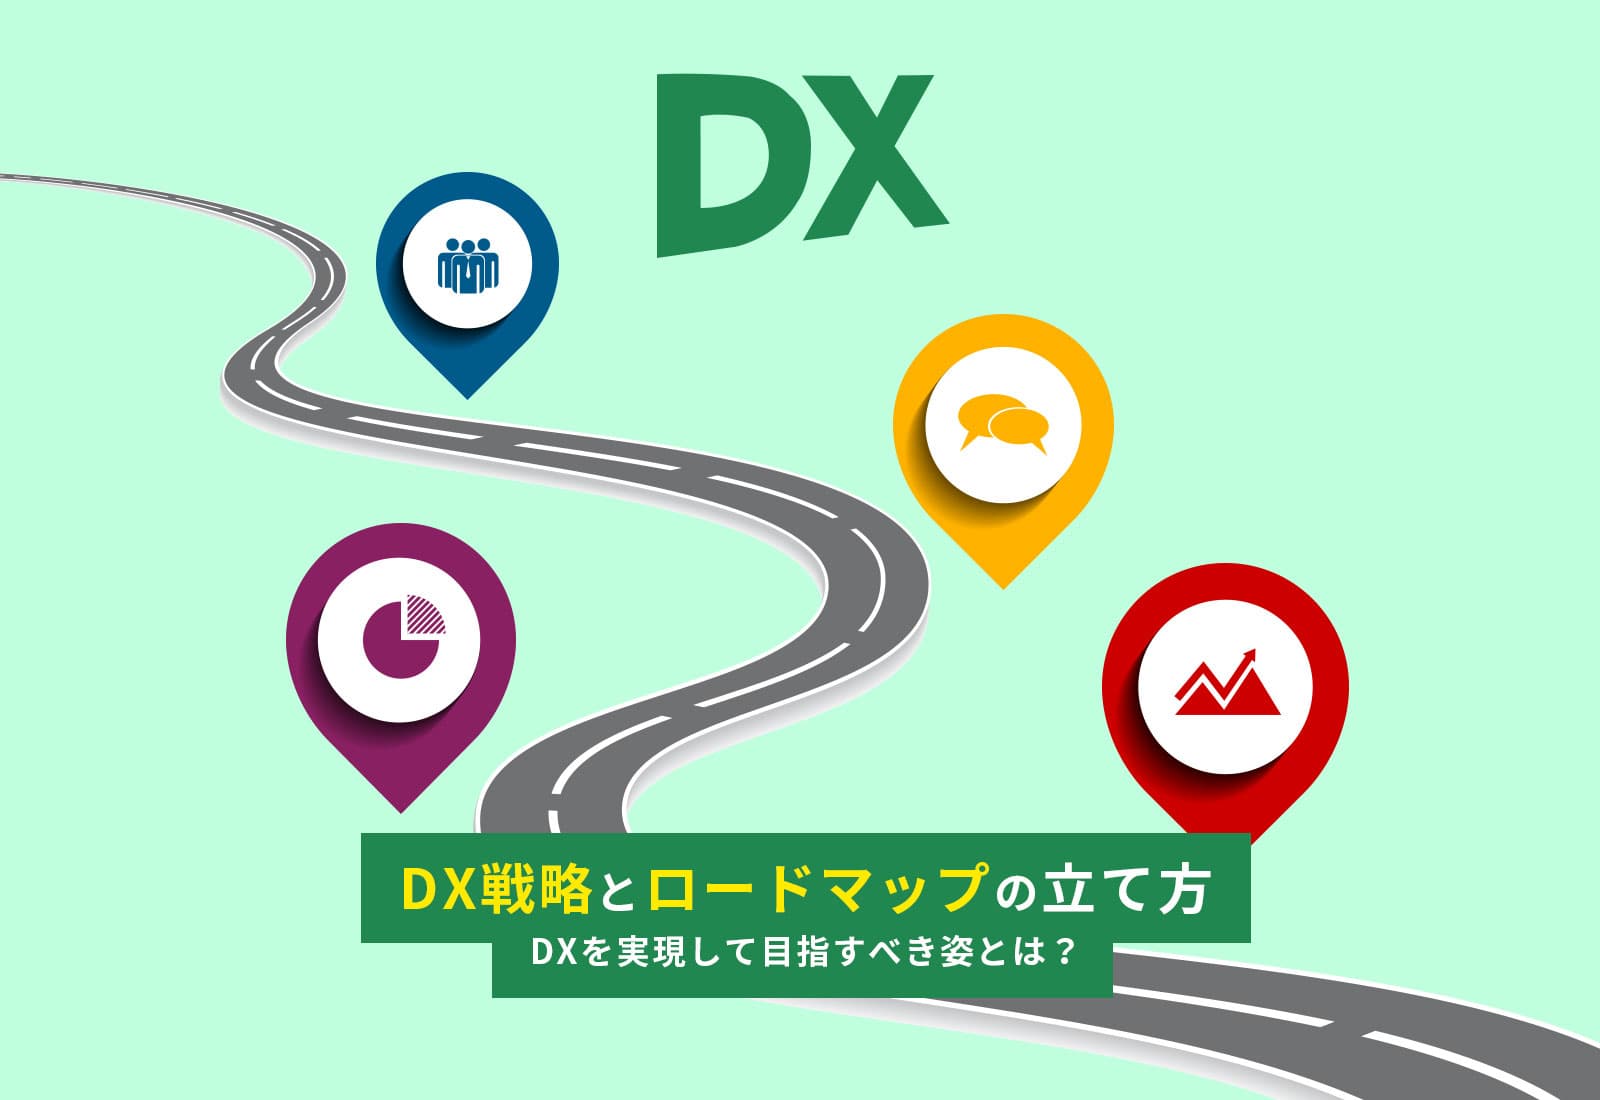 DX戦略とロードマップの立て方 - DXを実現して目指すべき姿とは？ -